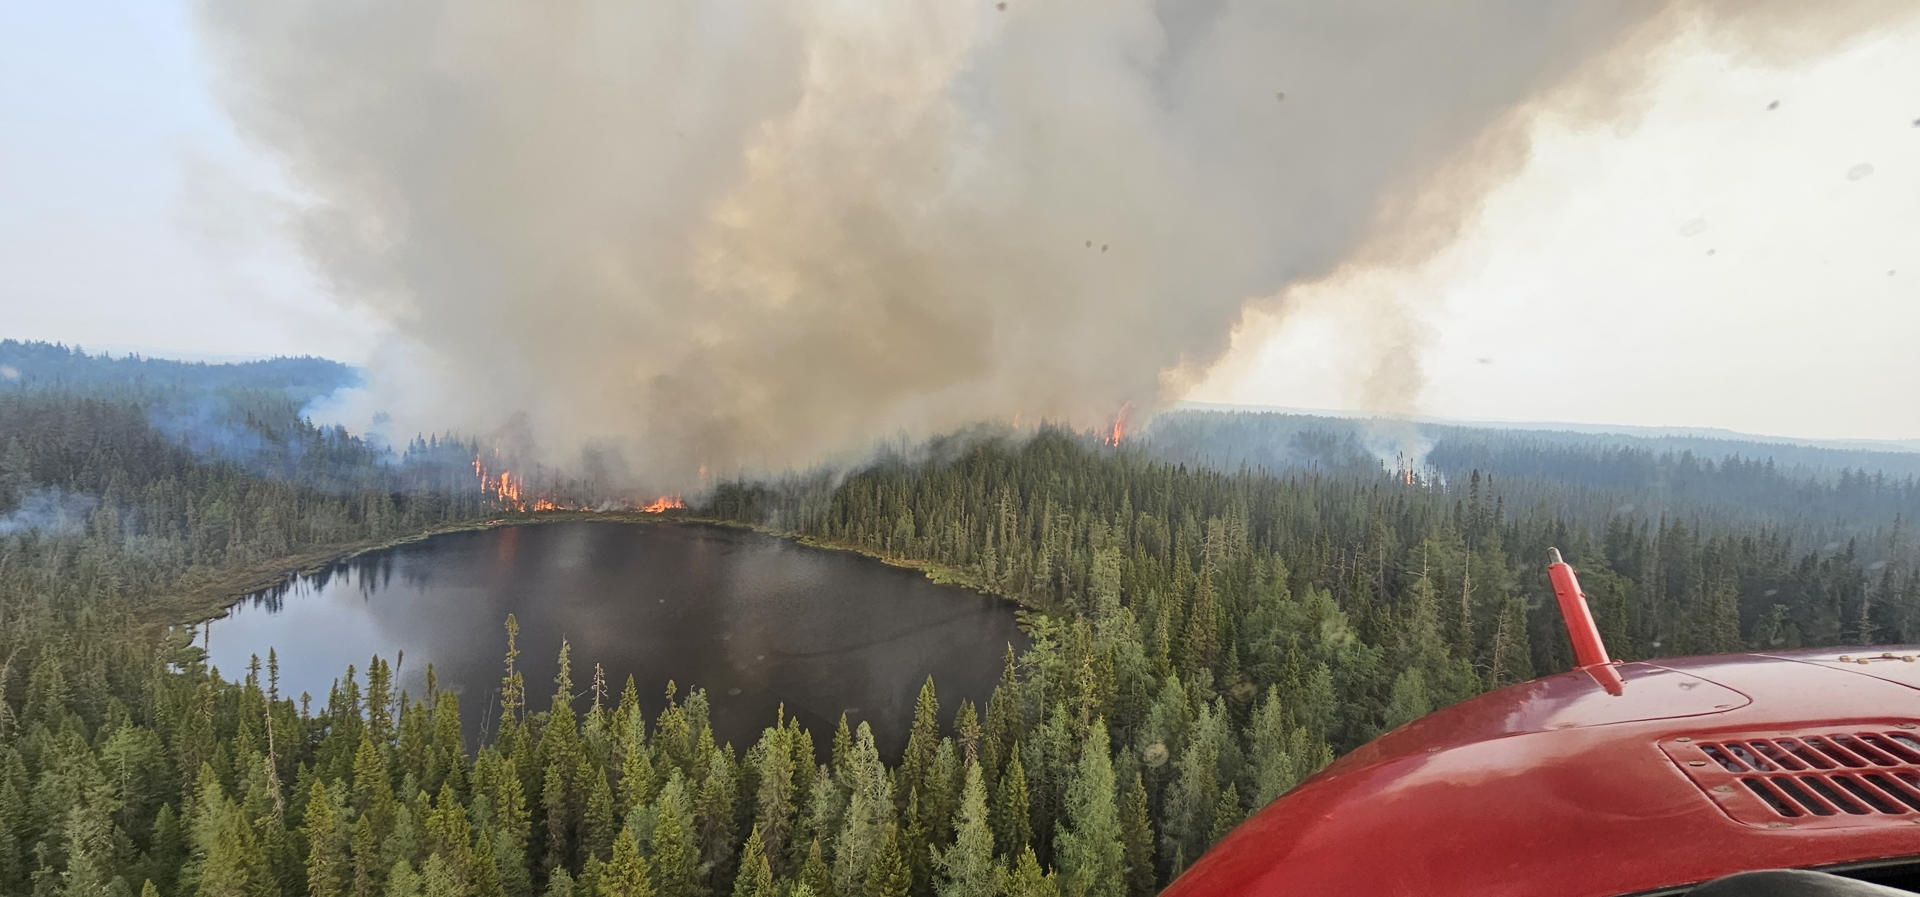 Los incendios forestales ralentizan el crecimiento económico de Canadá